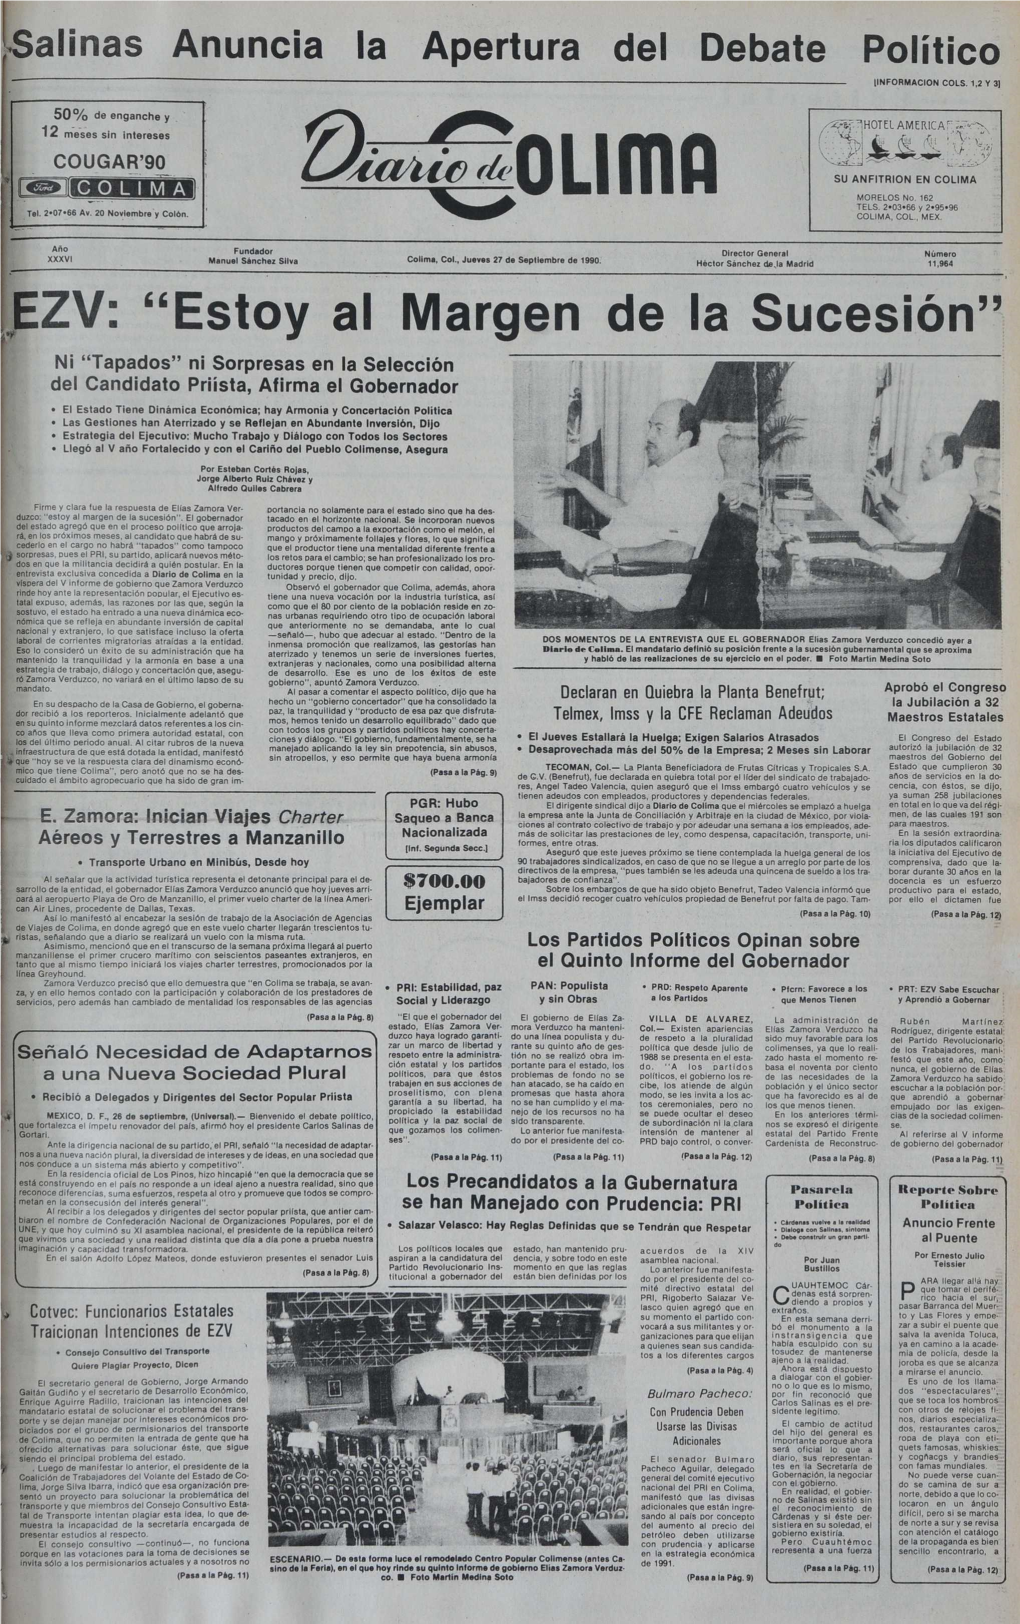 EZV: "Estoy Al Margen De La Sucesión"